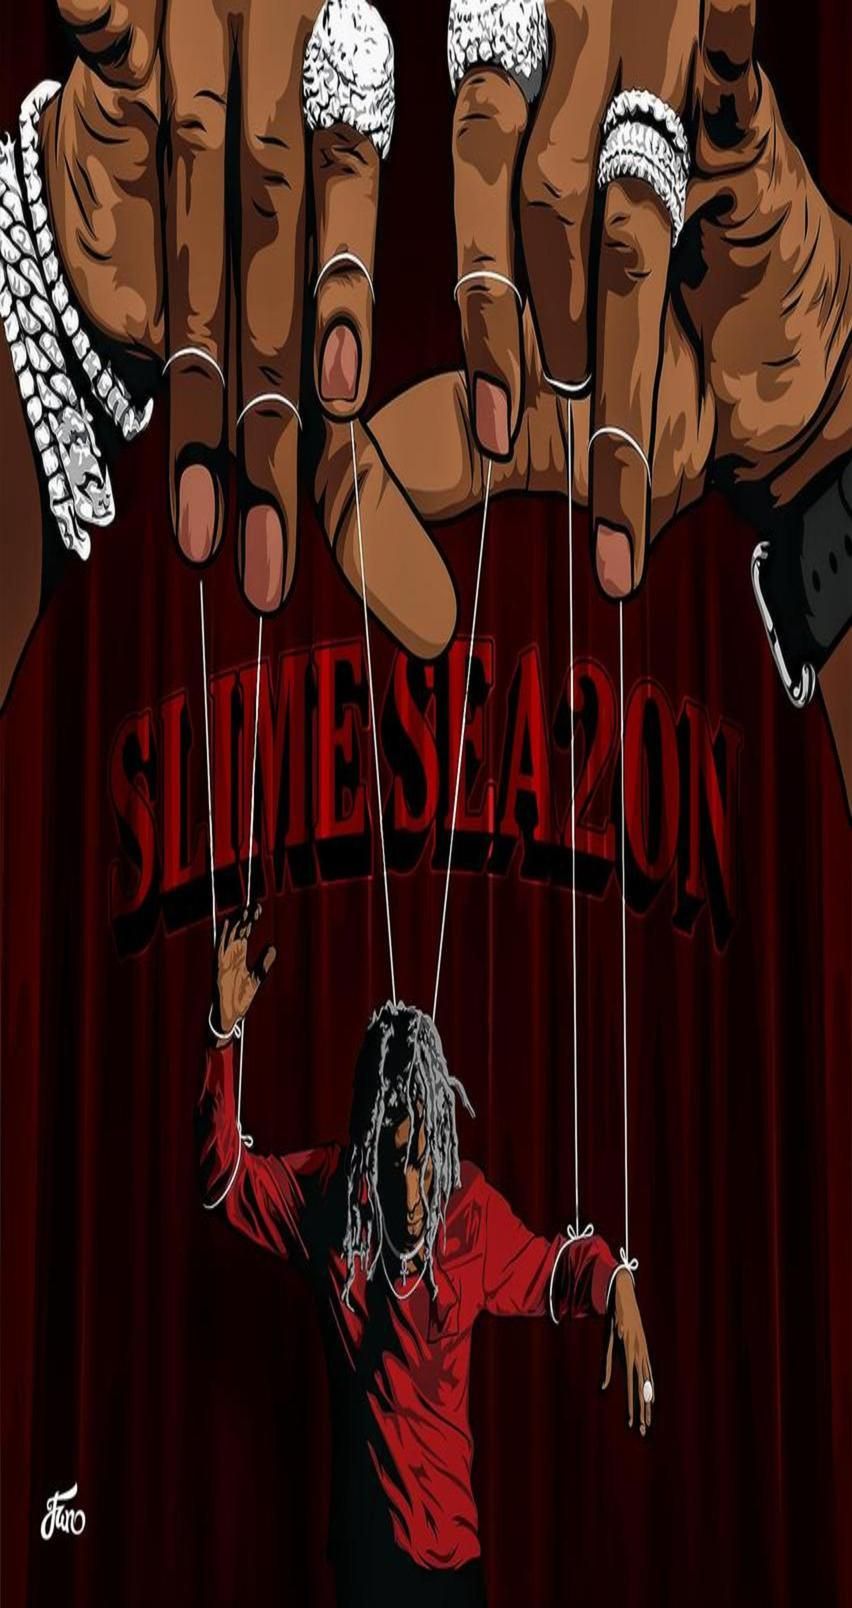 Young Thug Slime Season 2 - HD Wallpaper 